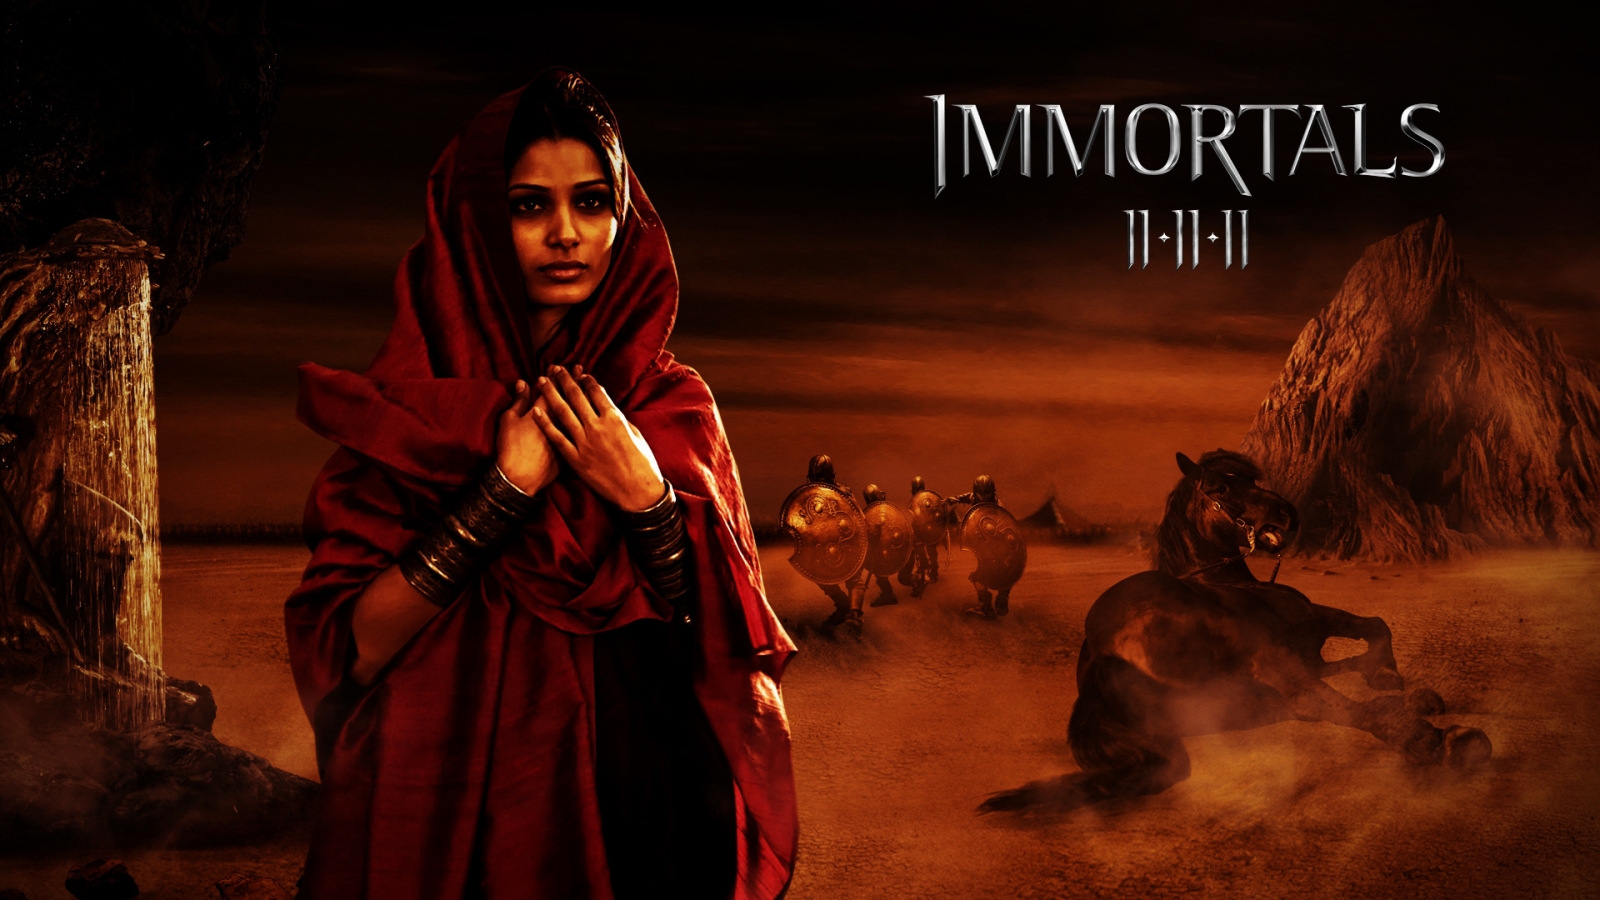 Immortals Movie Scene for 1600 x 900 HDTV resolution